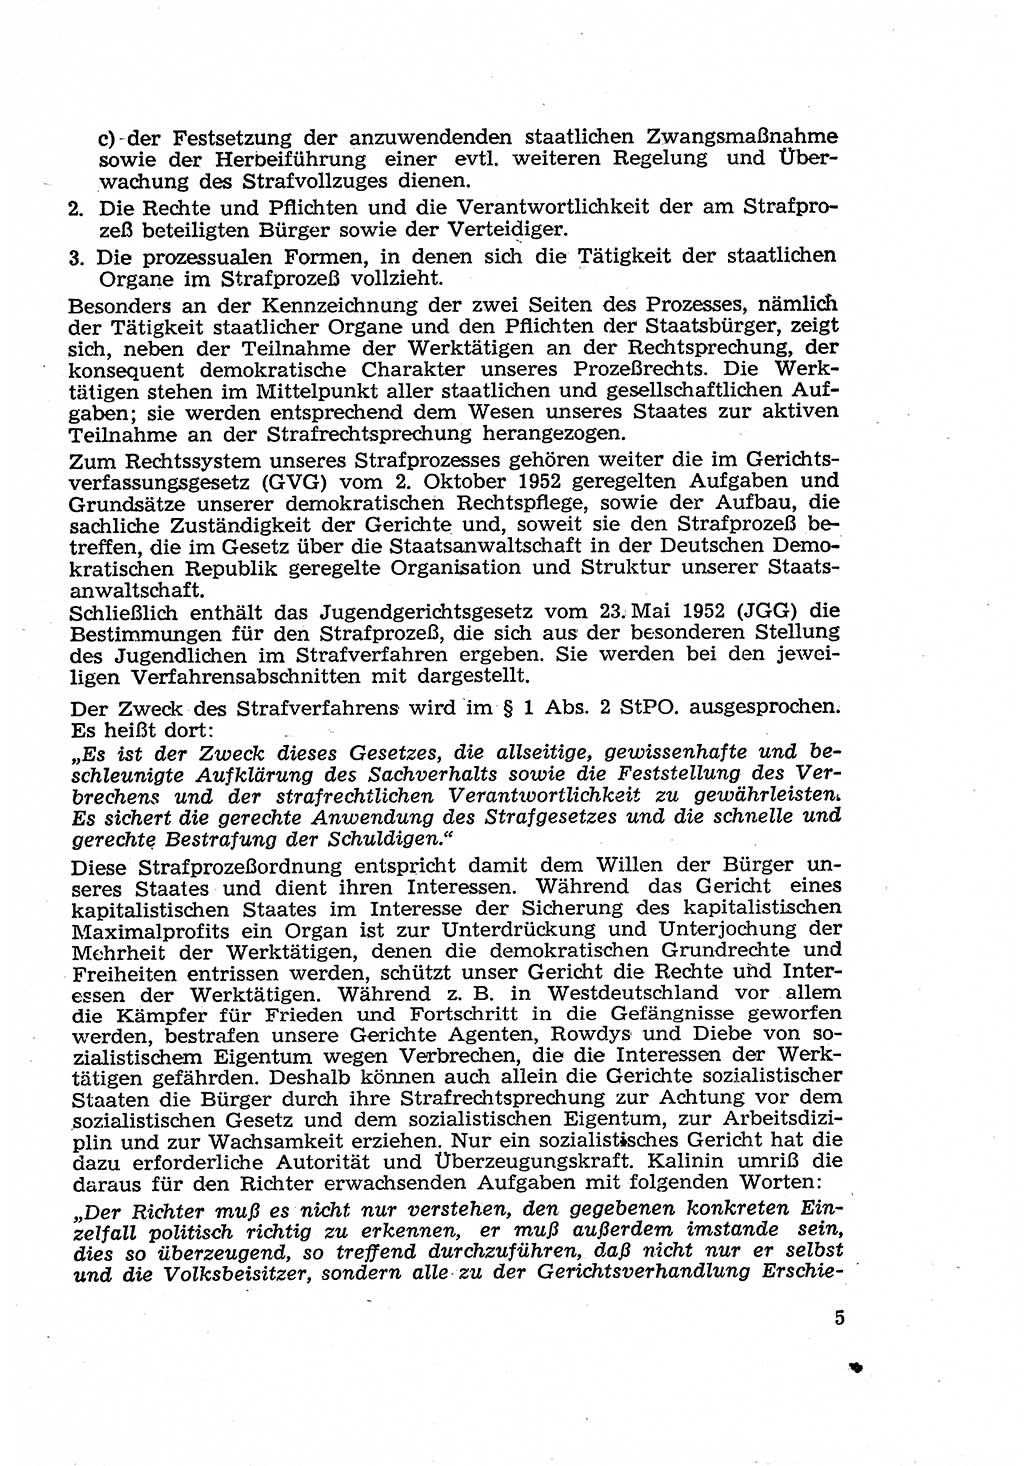 Strafverfahren in der Deutschen Demokratischen Republik (DDR) und seine demokratischen Prinzipien 1956, Seite 5 (Str.-Verf. DDR 1956, S. 5)